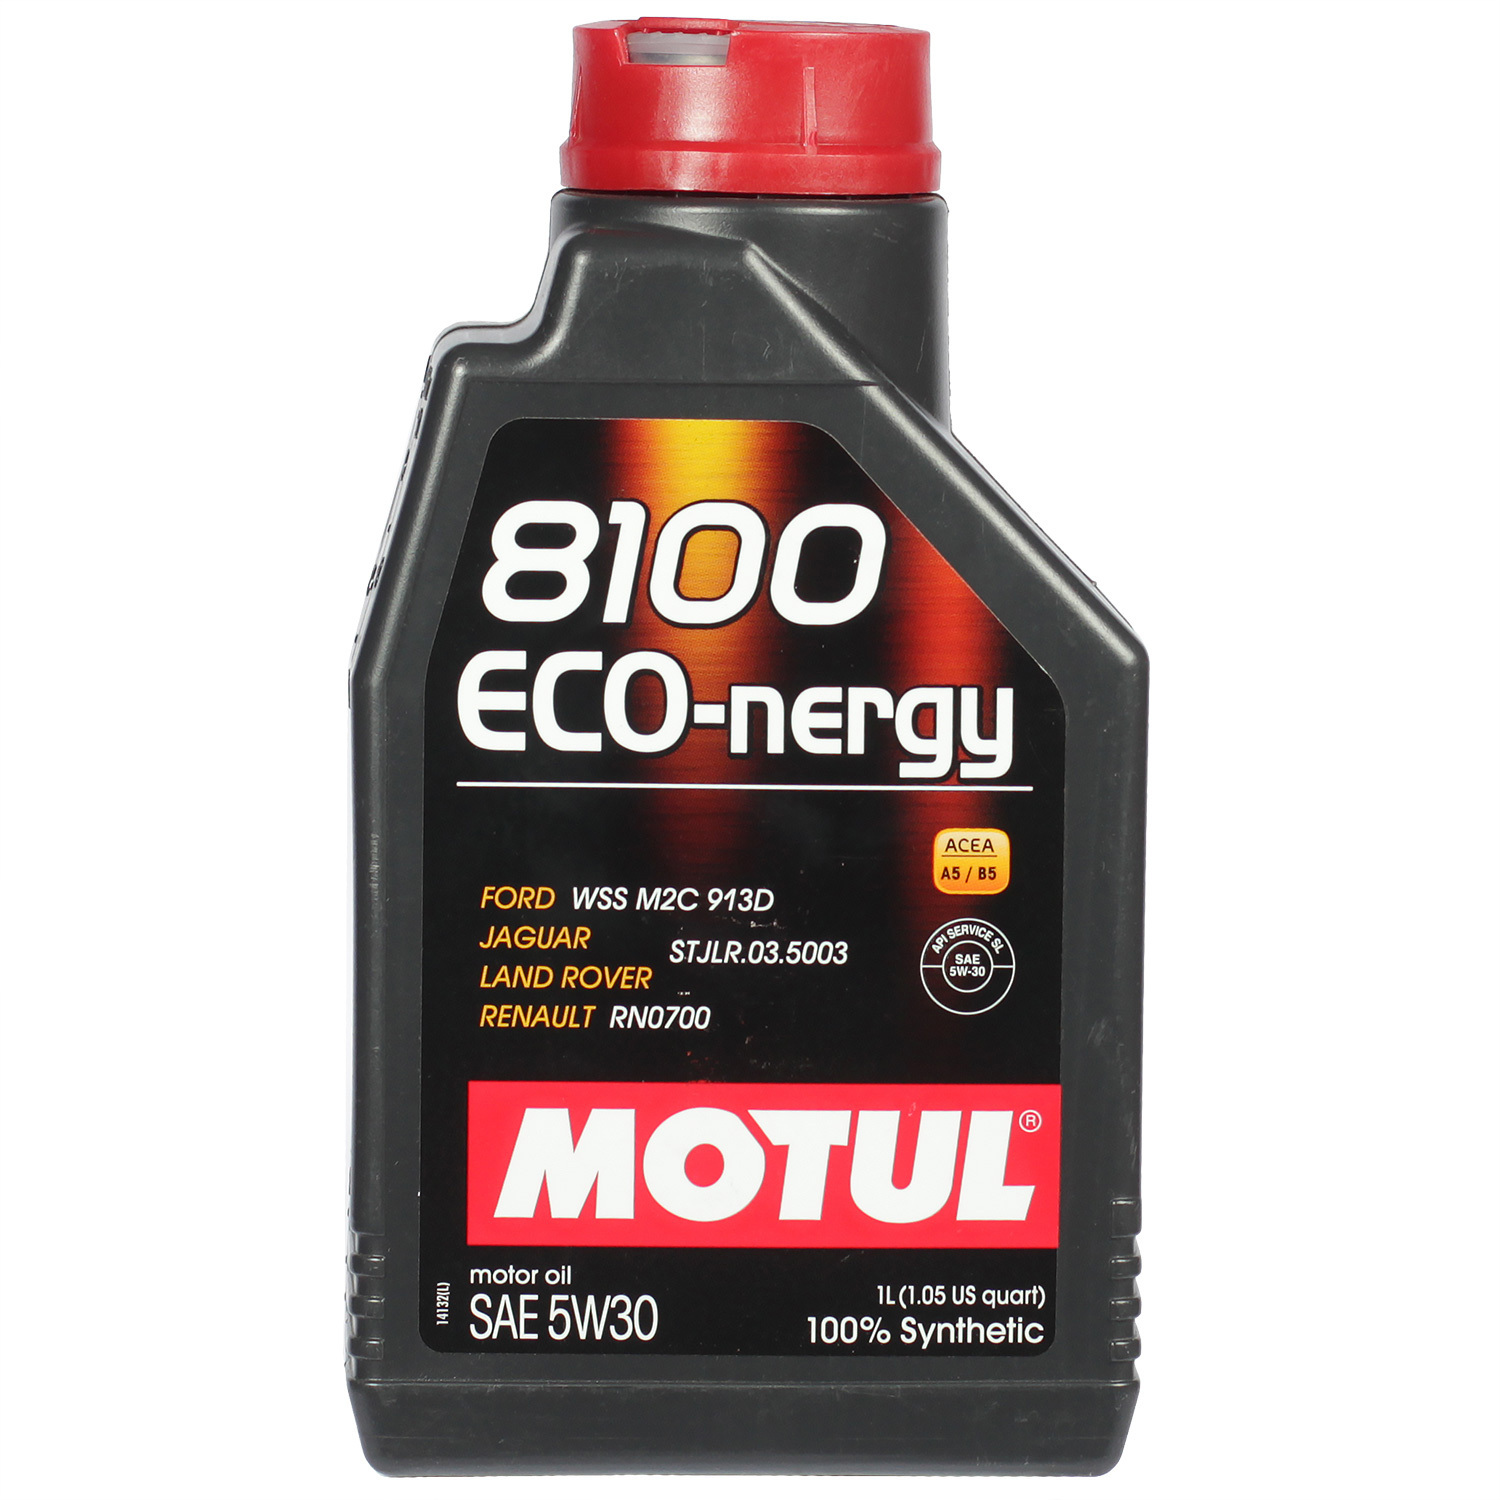 Motul Моторное масло Motul 8100 Eco-nergy 5W-30, 1 л motul моторное масло motul 8100 x clean efe 5w 30 1 л